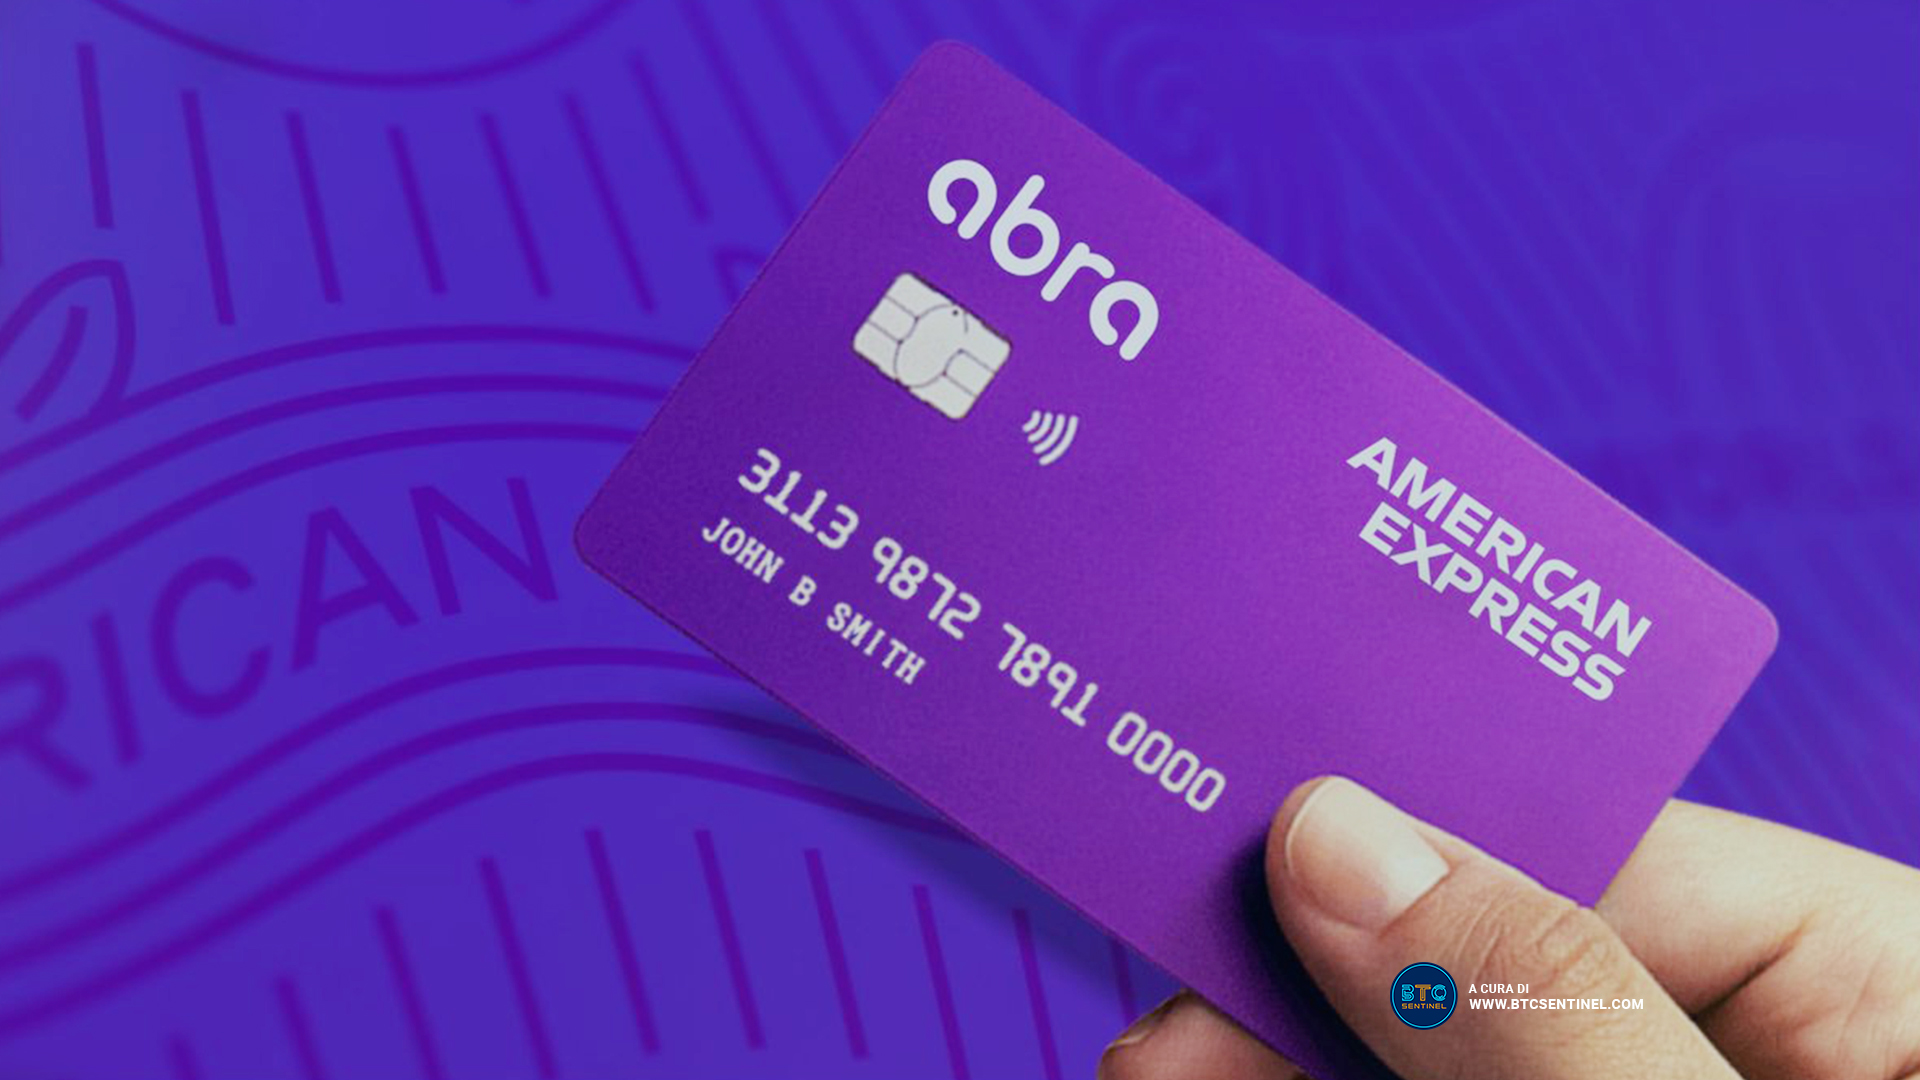 American Express offre la sua prima carta di credito con Crypto Rewards